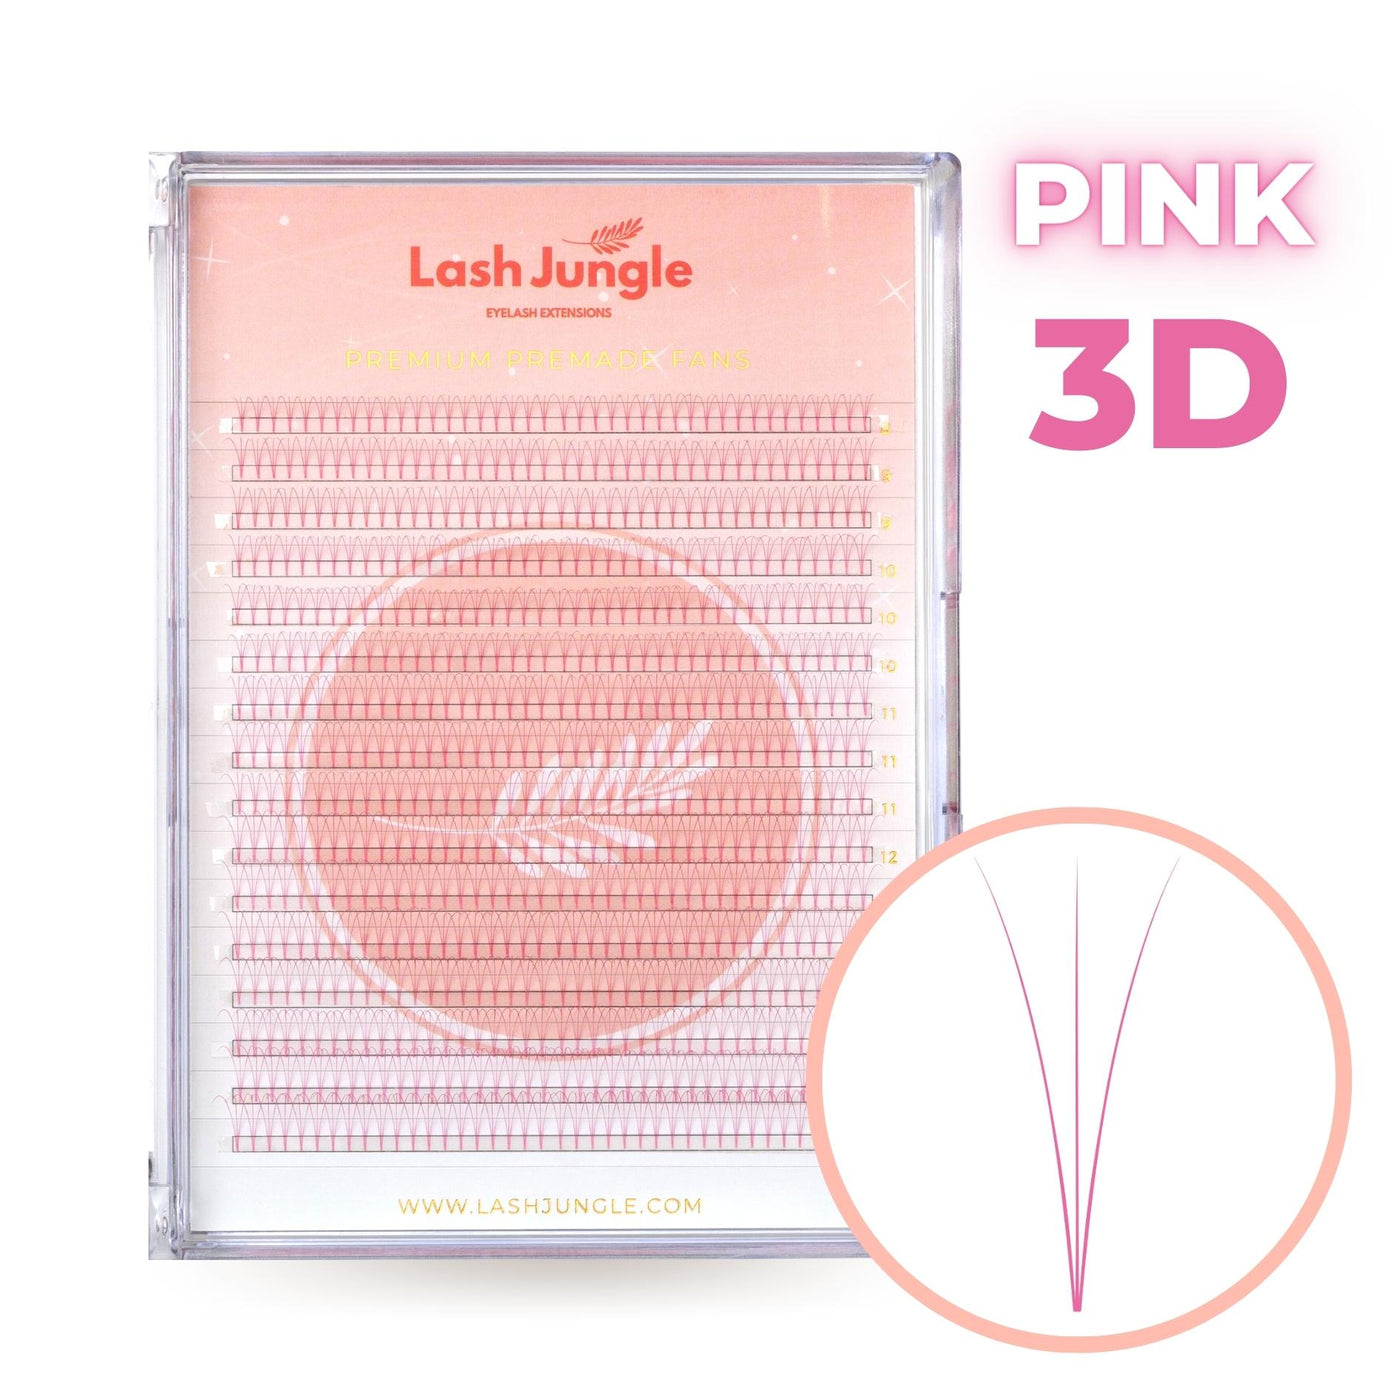 3D Pink premade fans short stem